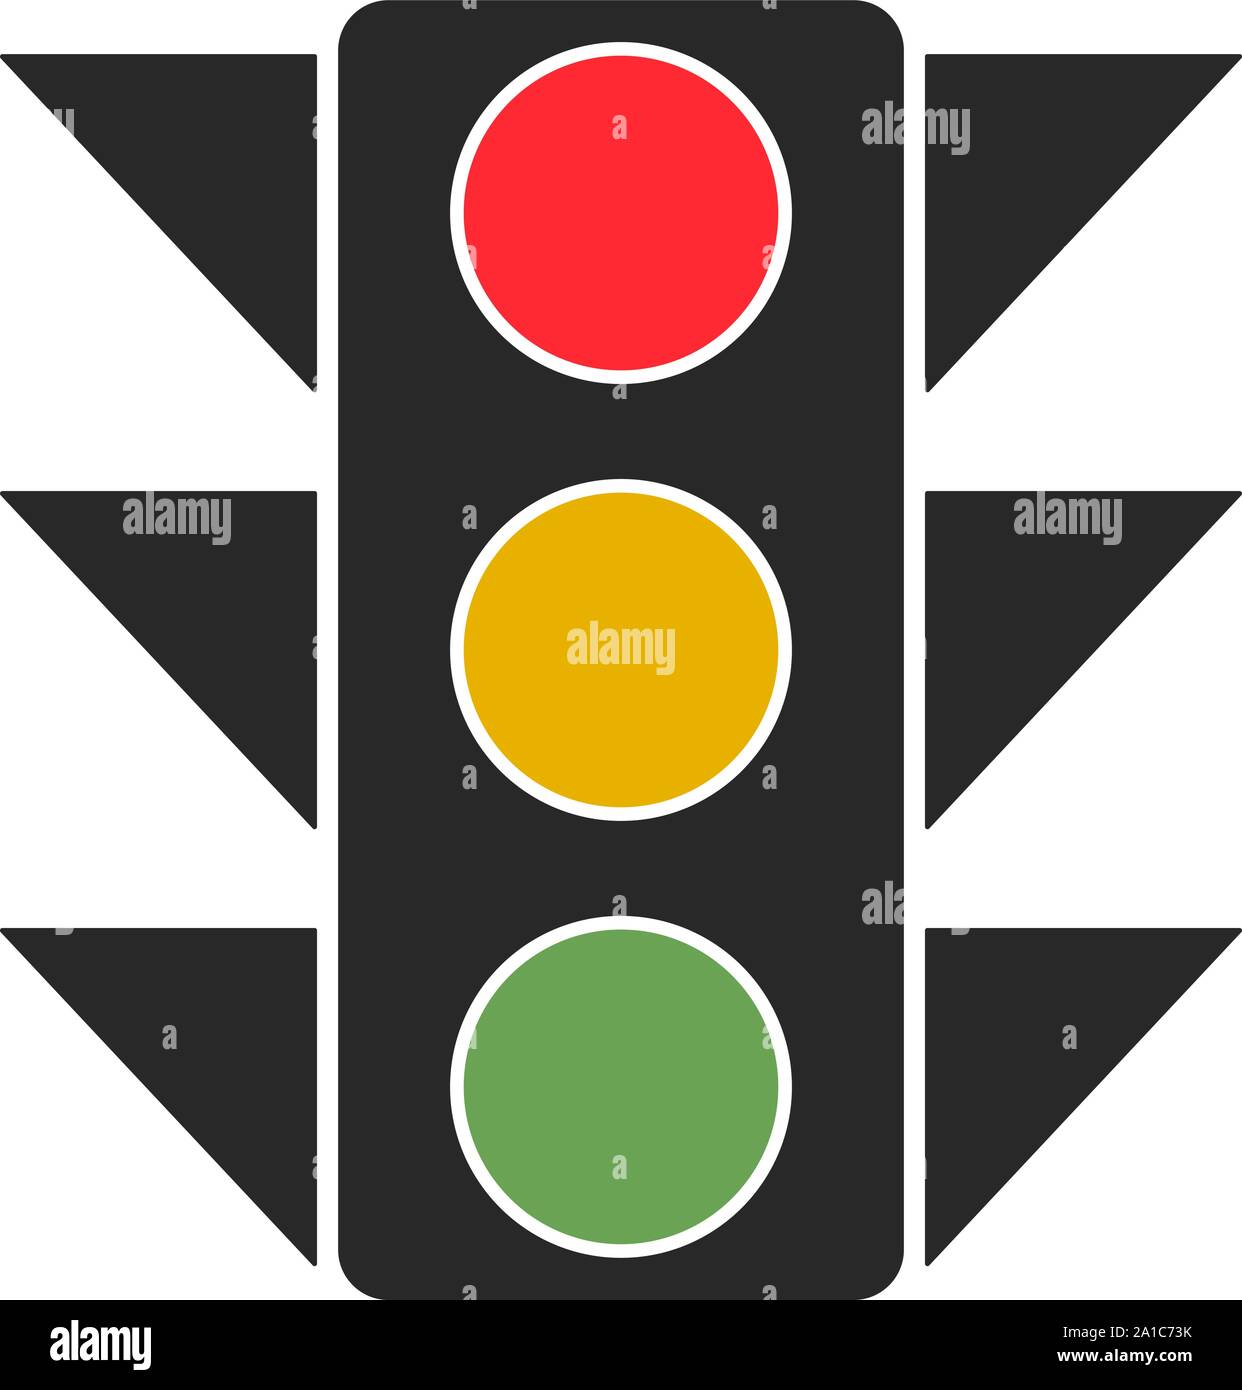 Traffic light, illustration, vector on white background. Stock Vector